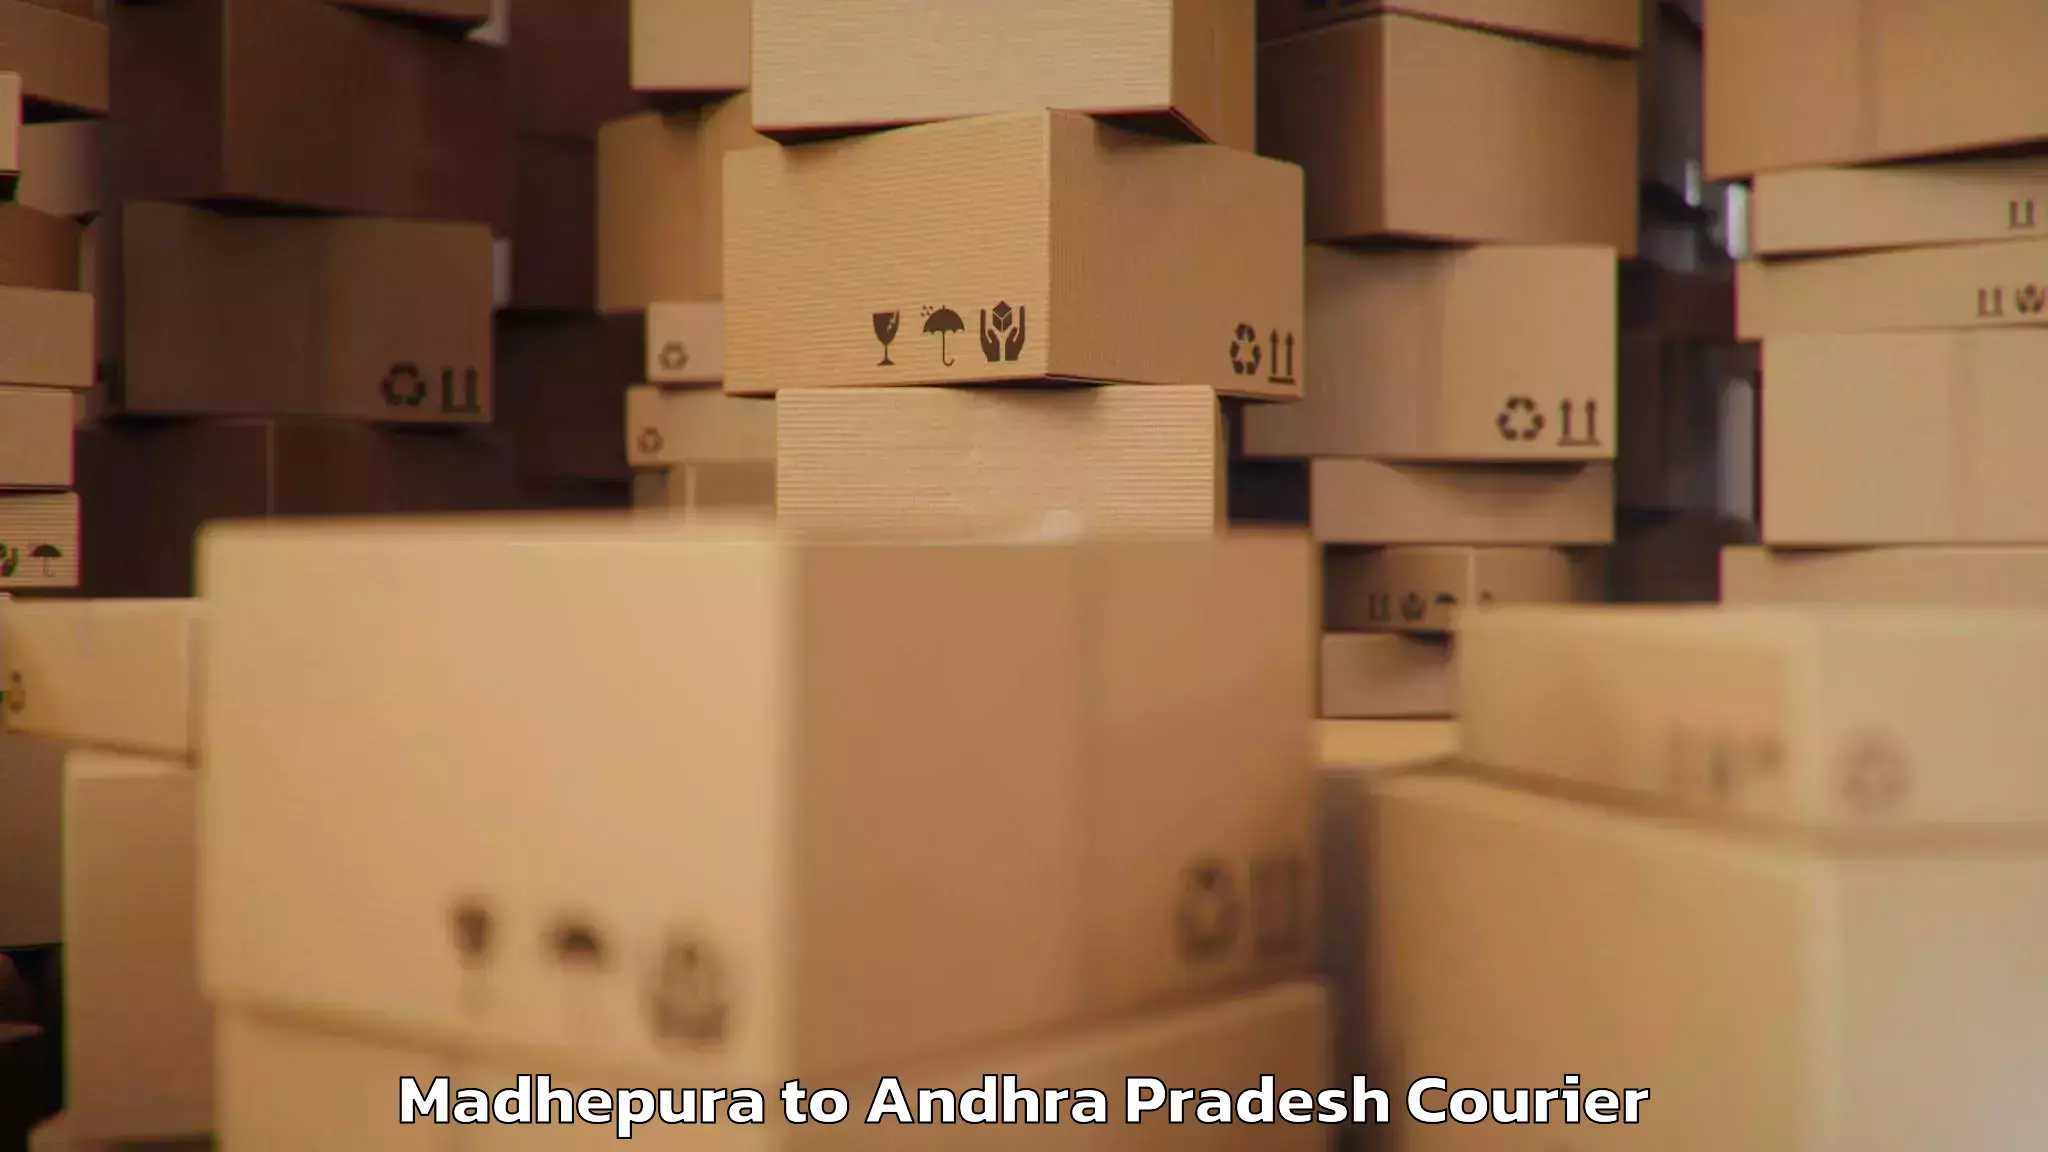 Luggage shipment tracking Madhepura to Ramachandrapuram